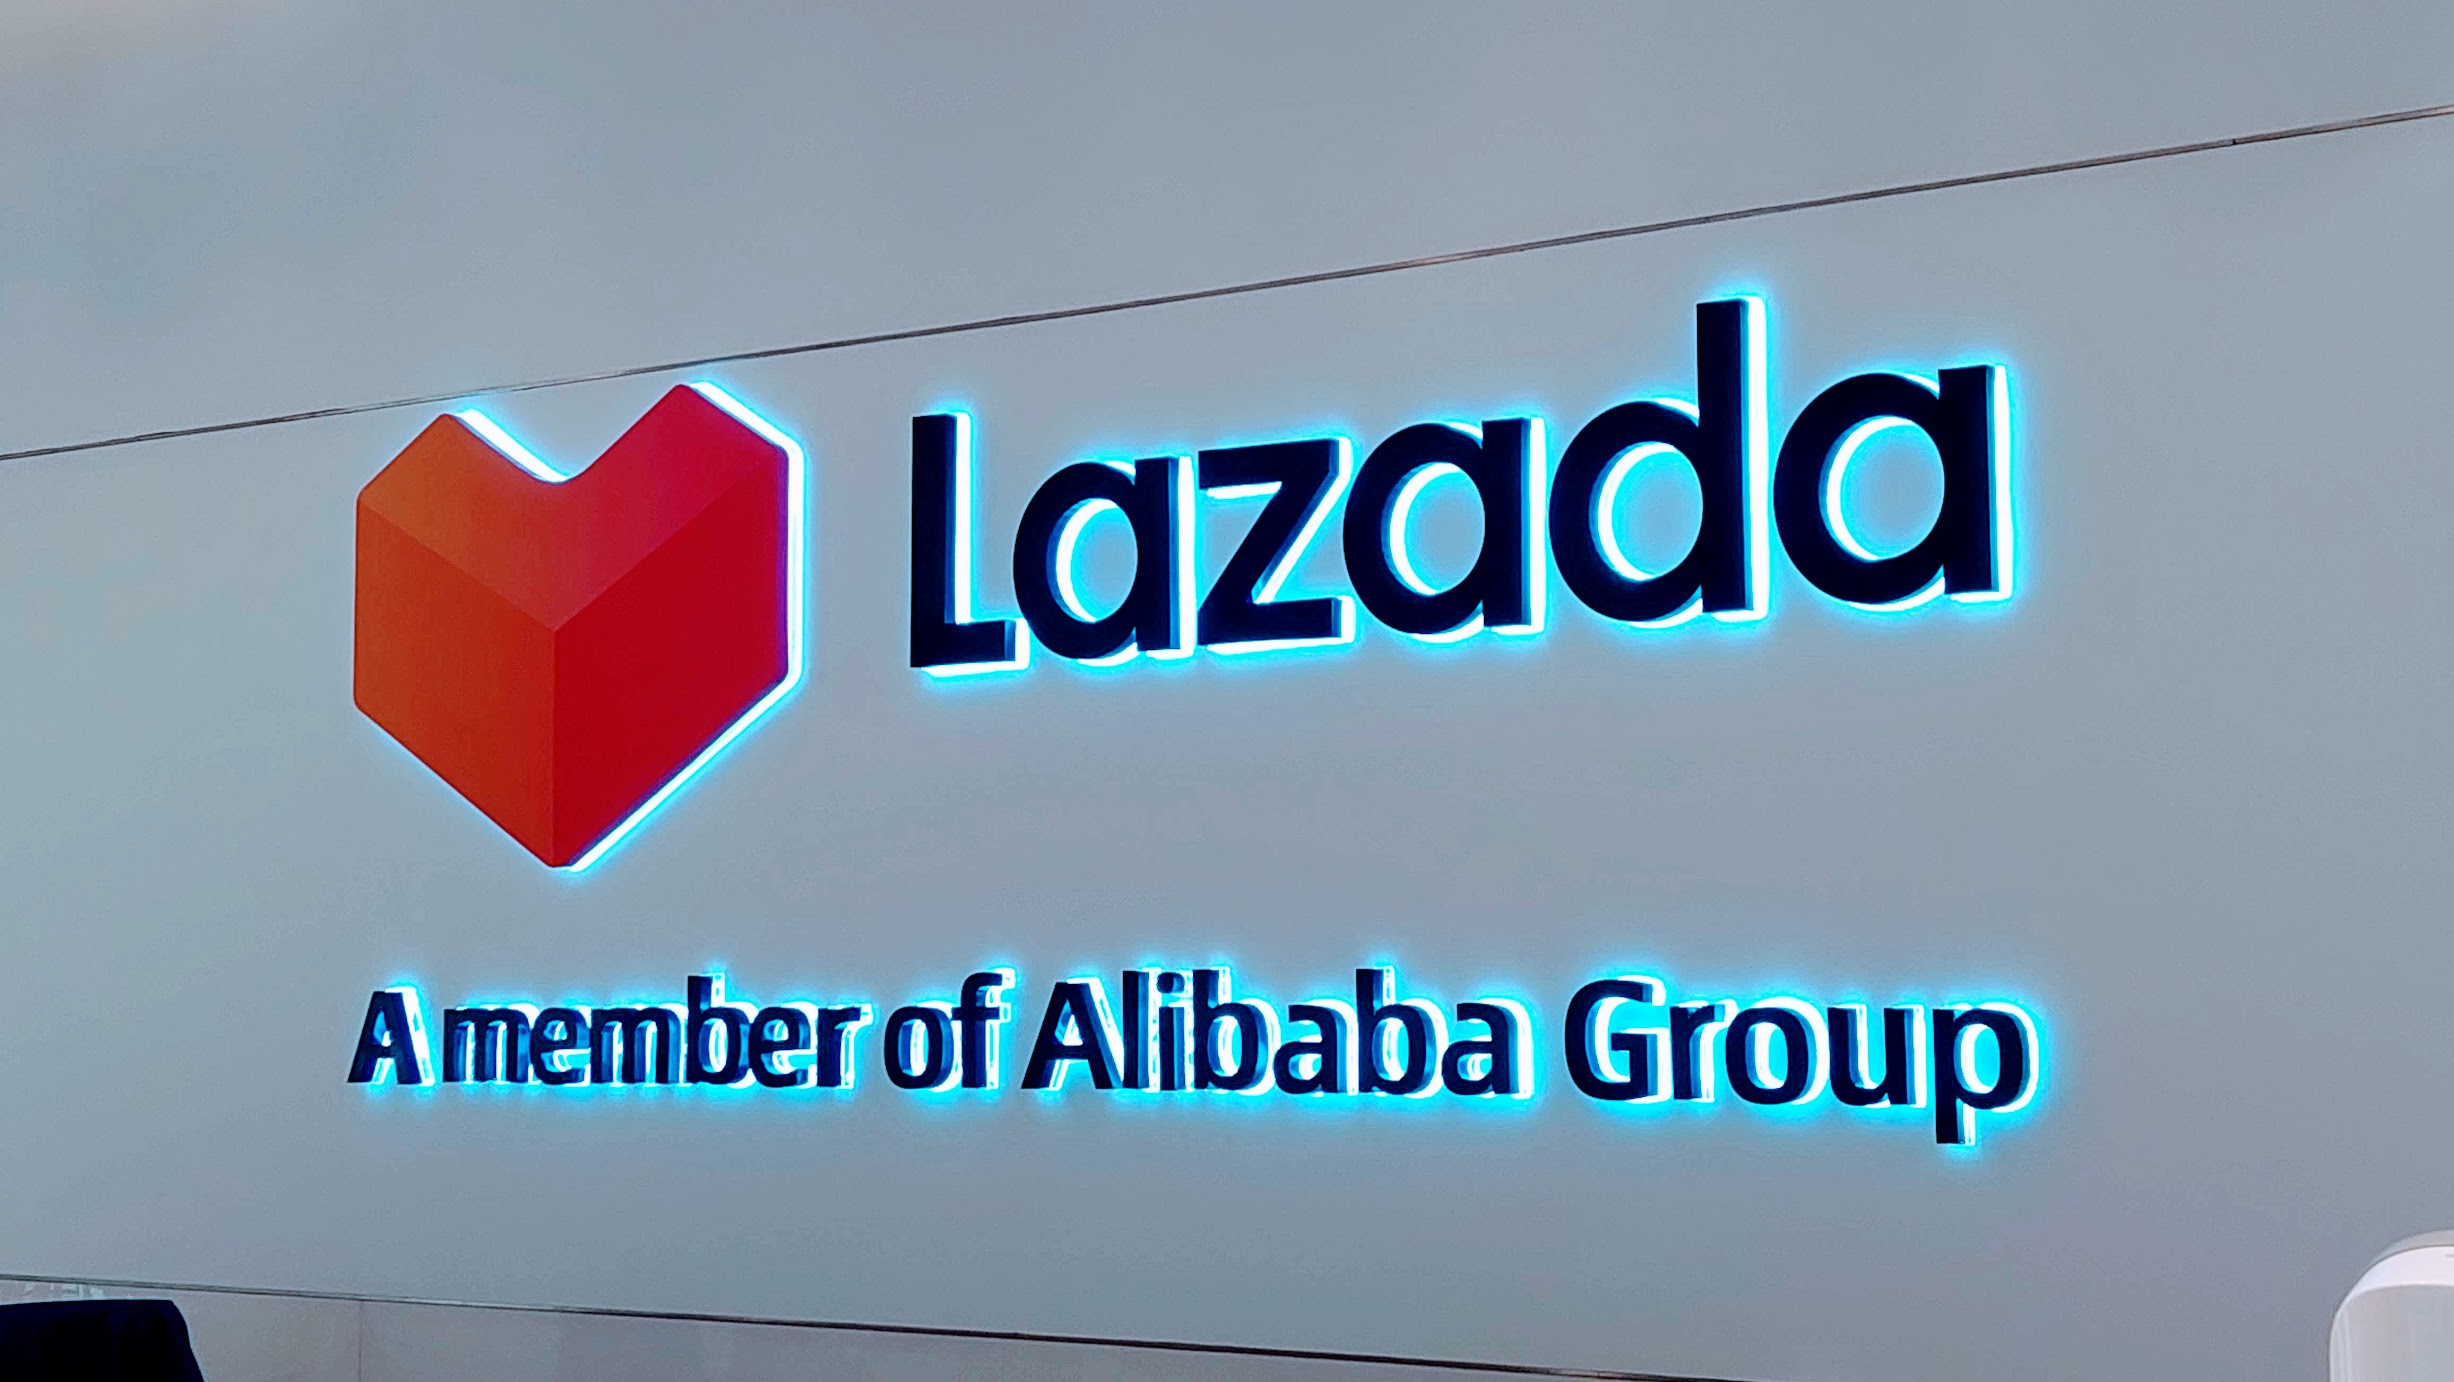 Alibaba Melakukan Suntikan Dana Tambahan Ke Lazada Hampir RM1.5 Bilion